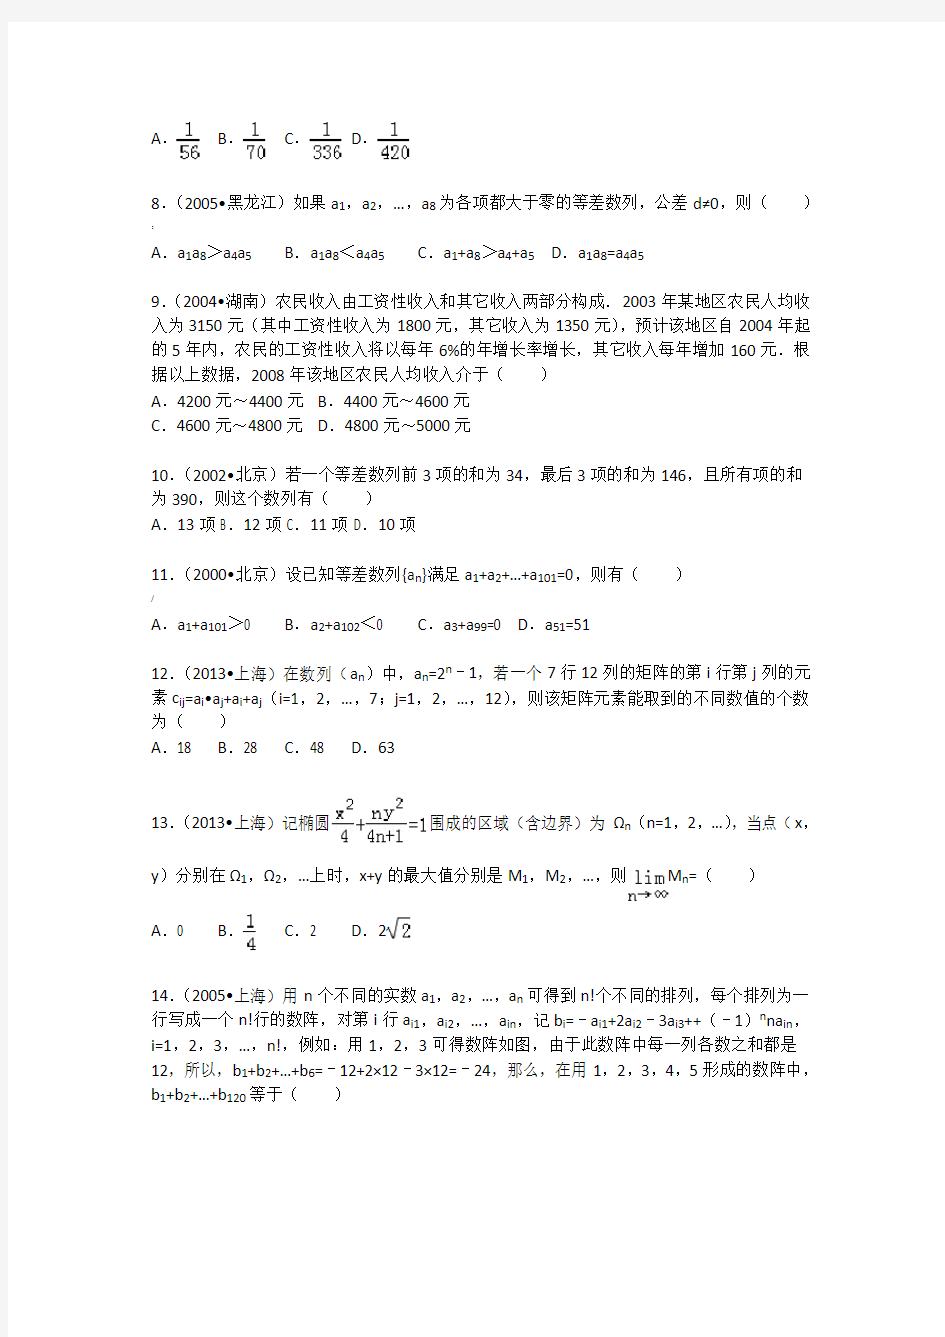 高中数学经典高考难题集锦(解析版)(9)